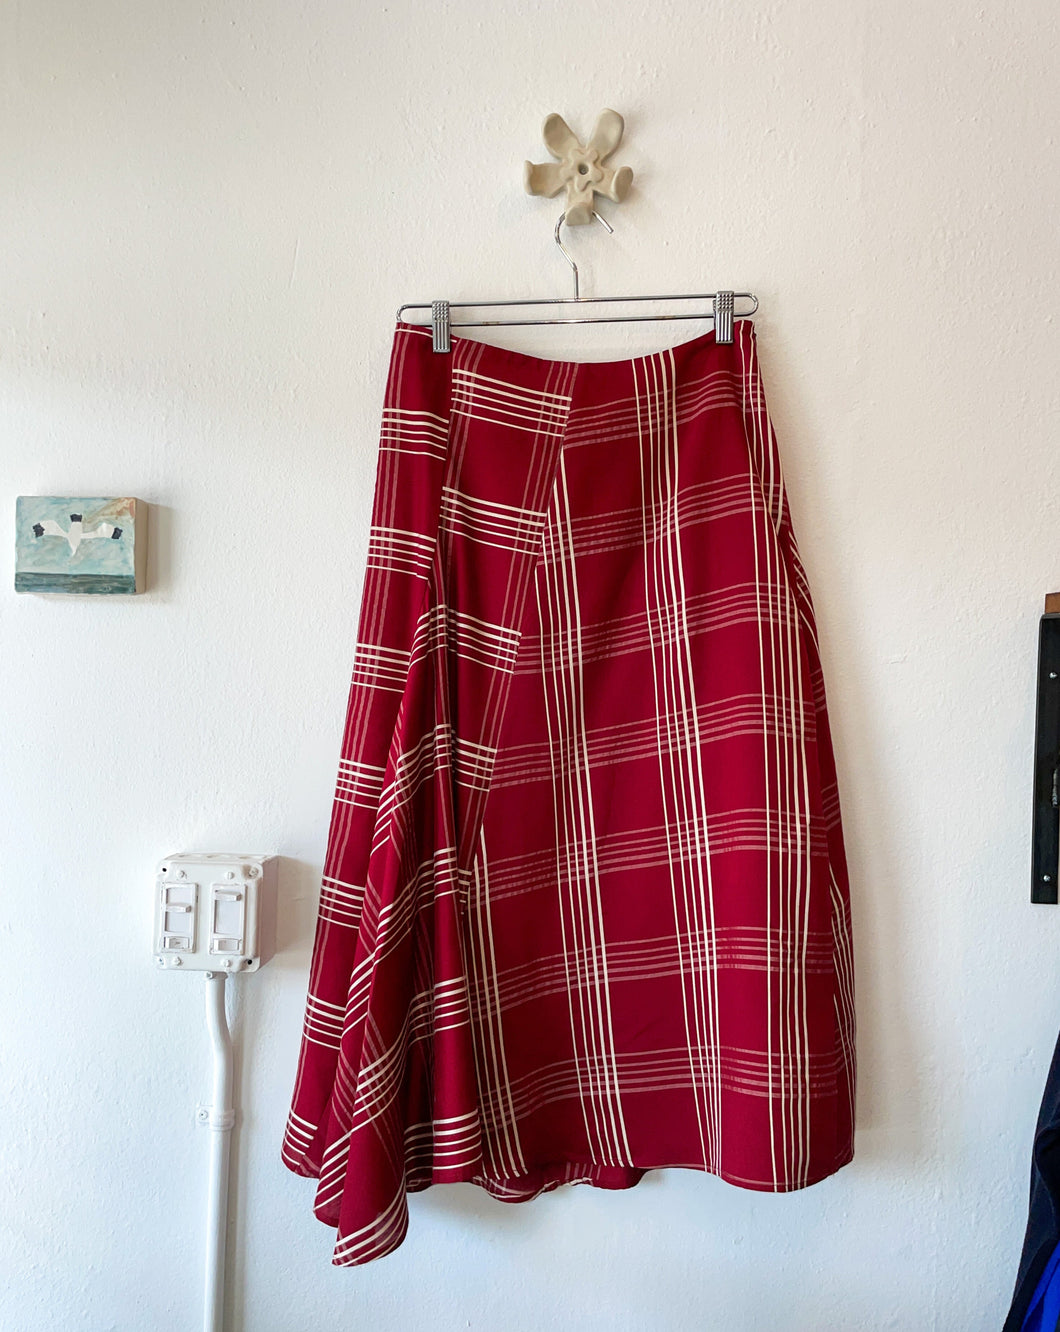 Camden Skirt